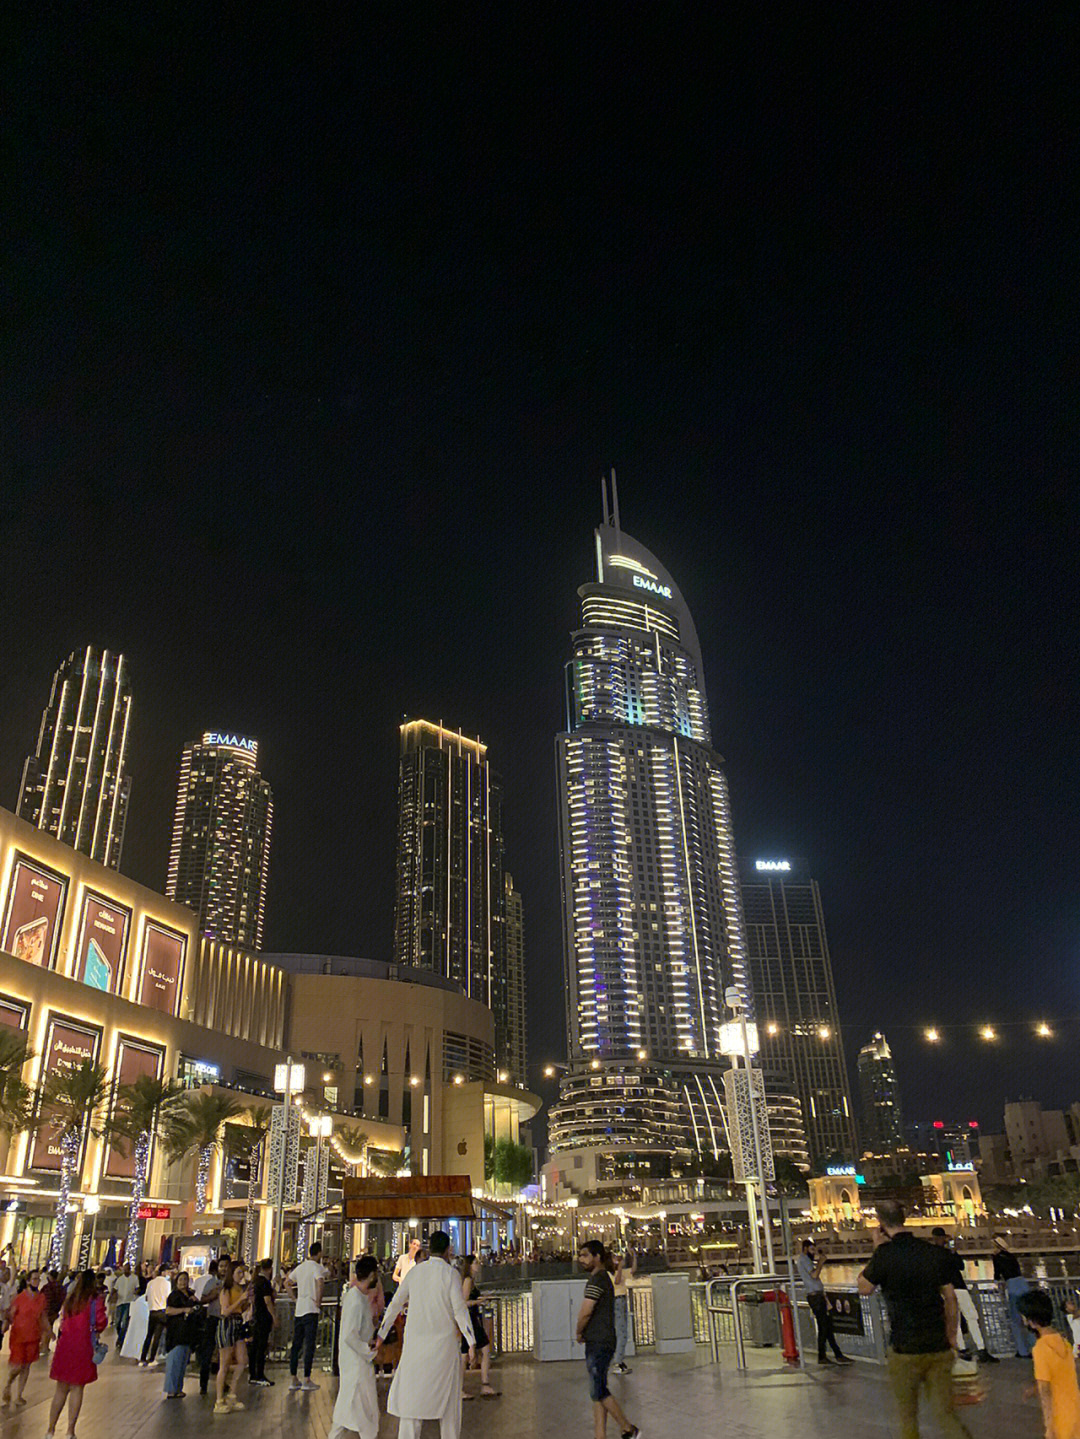 迪拜mall楼层指引图片